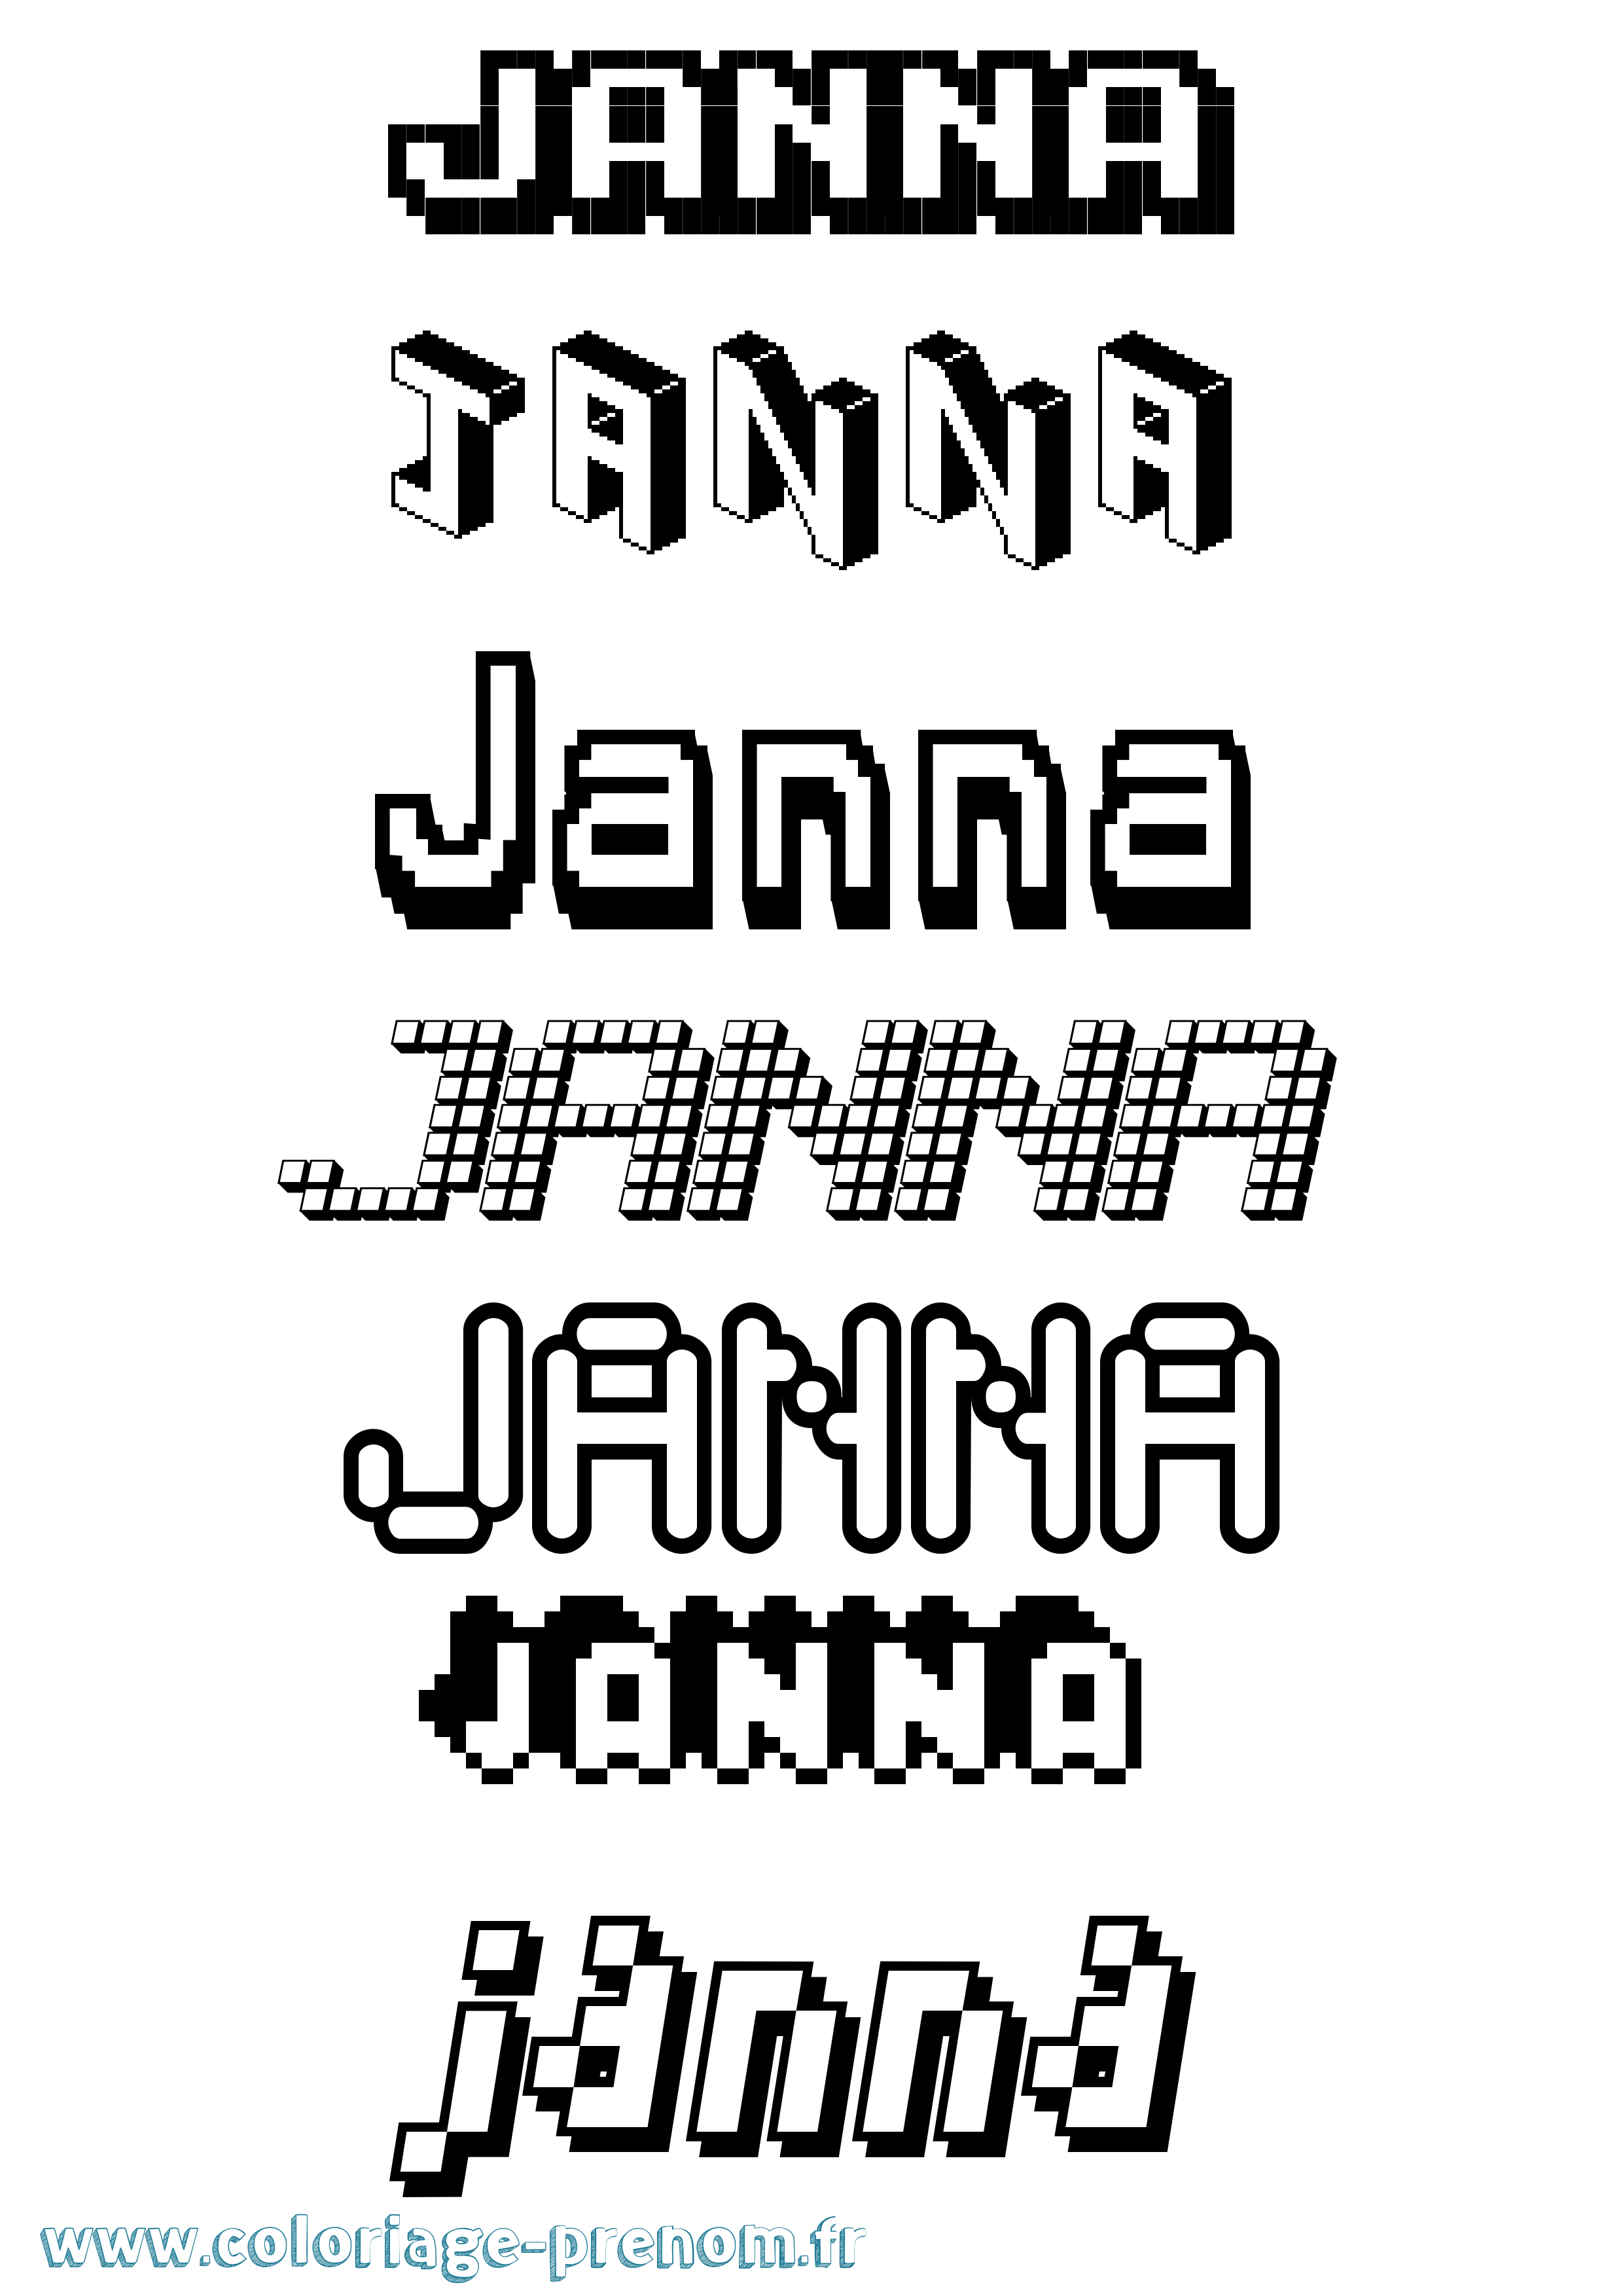 Coloriage prénom Janna Pixel